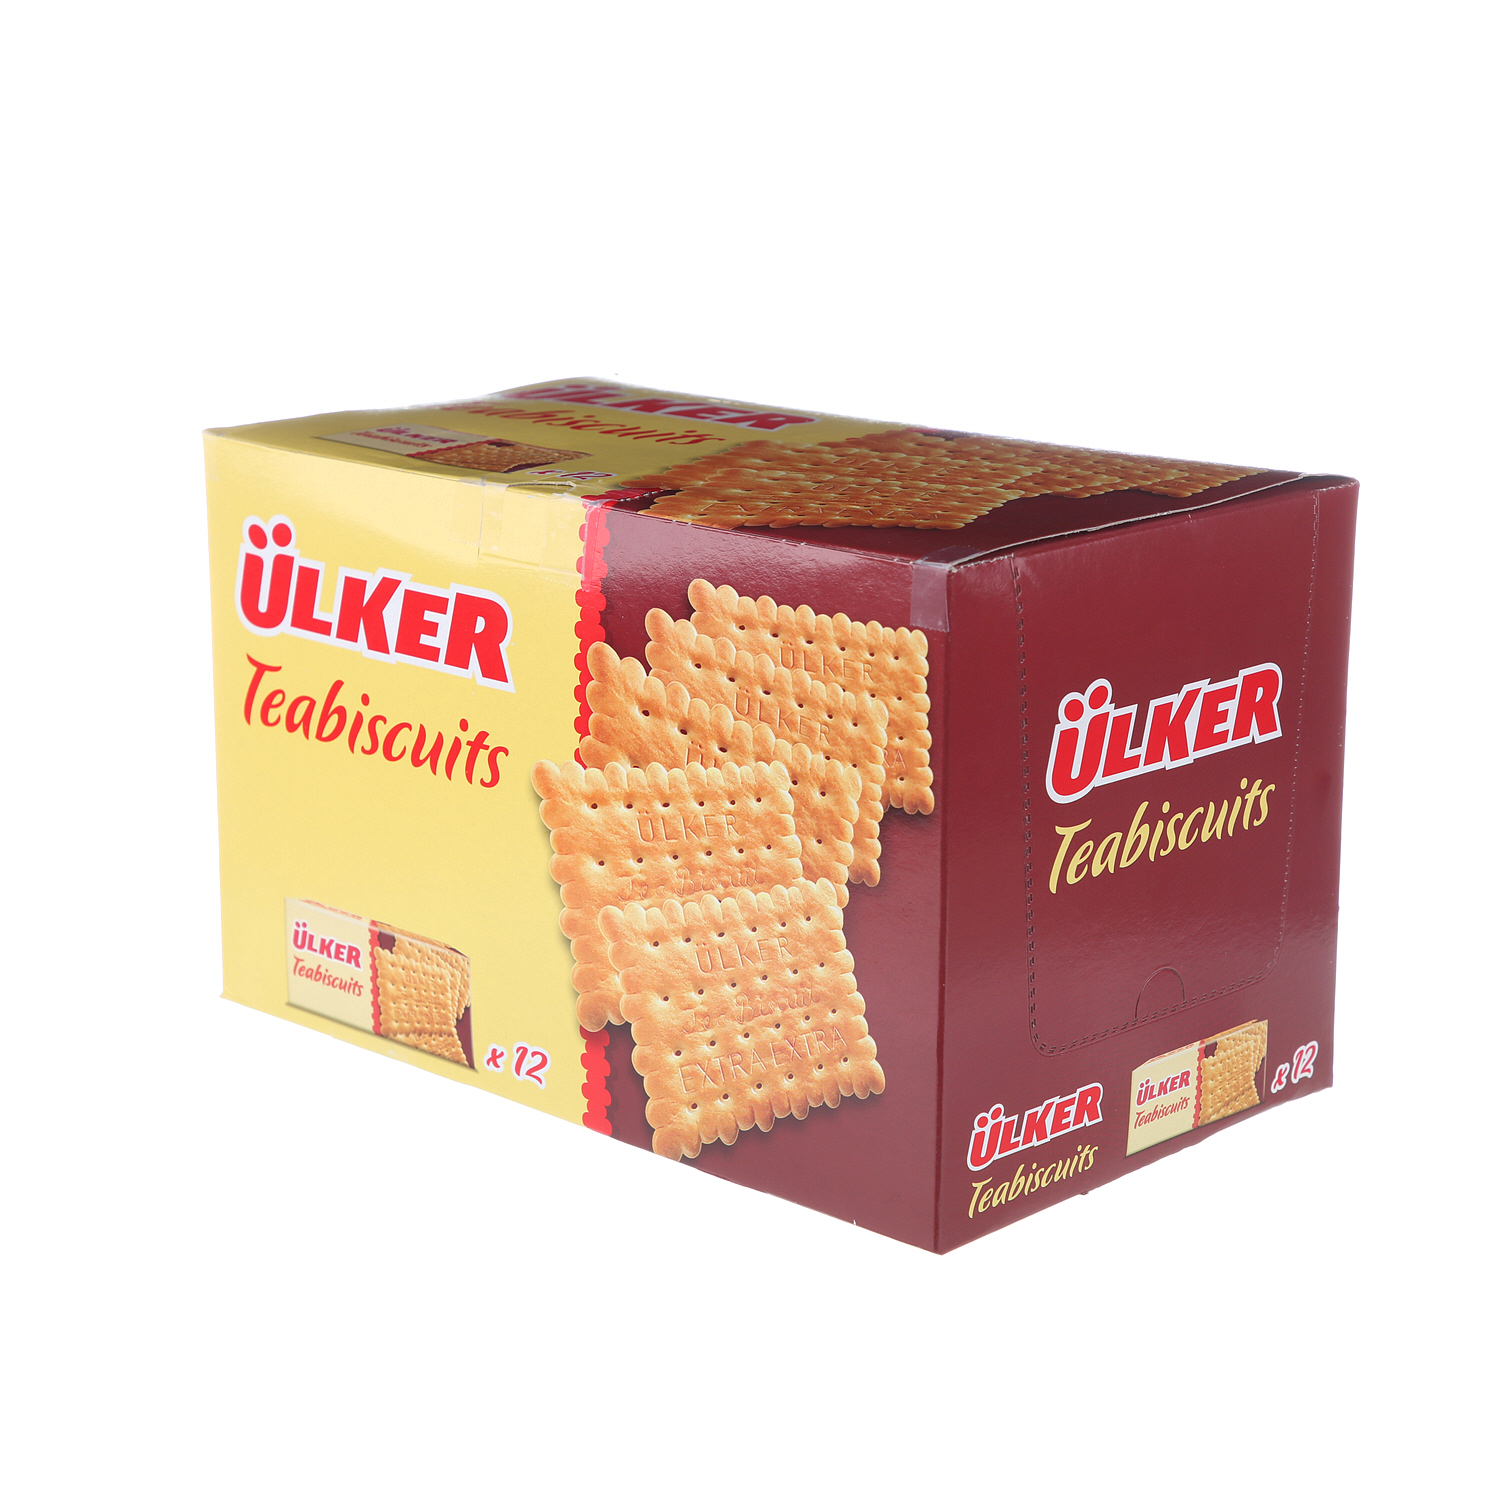 Ulker Tea Biscuits 165gm × 12'S